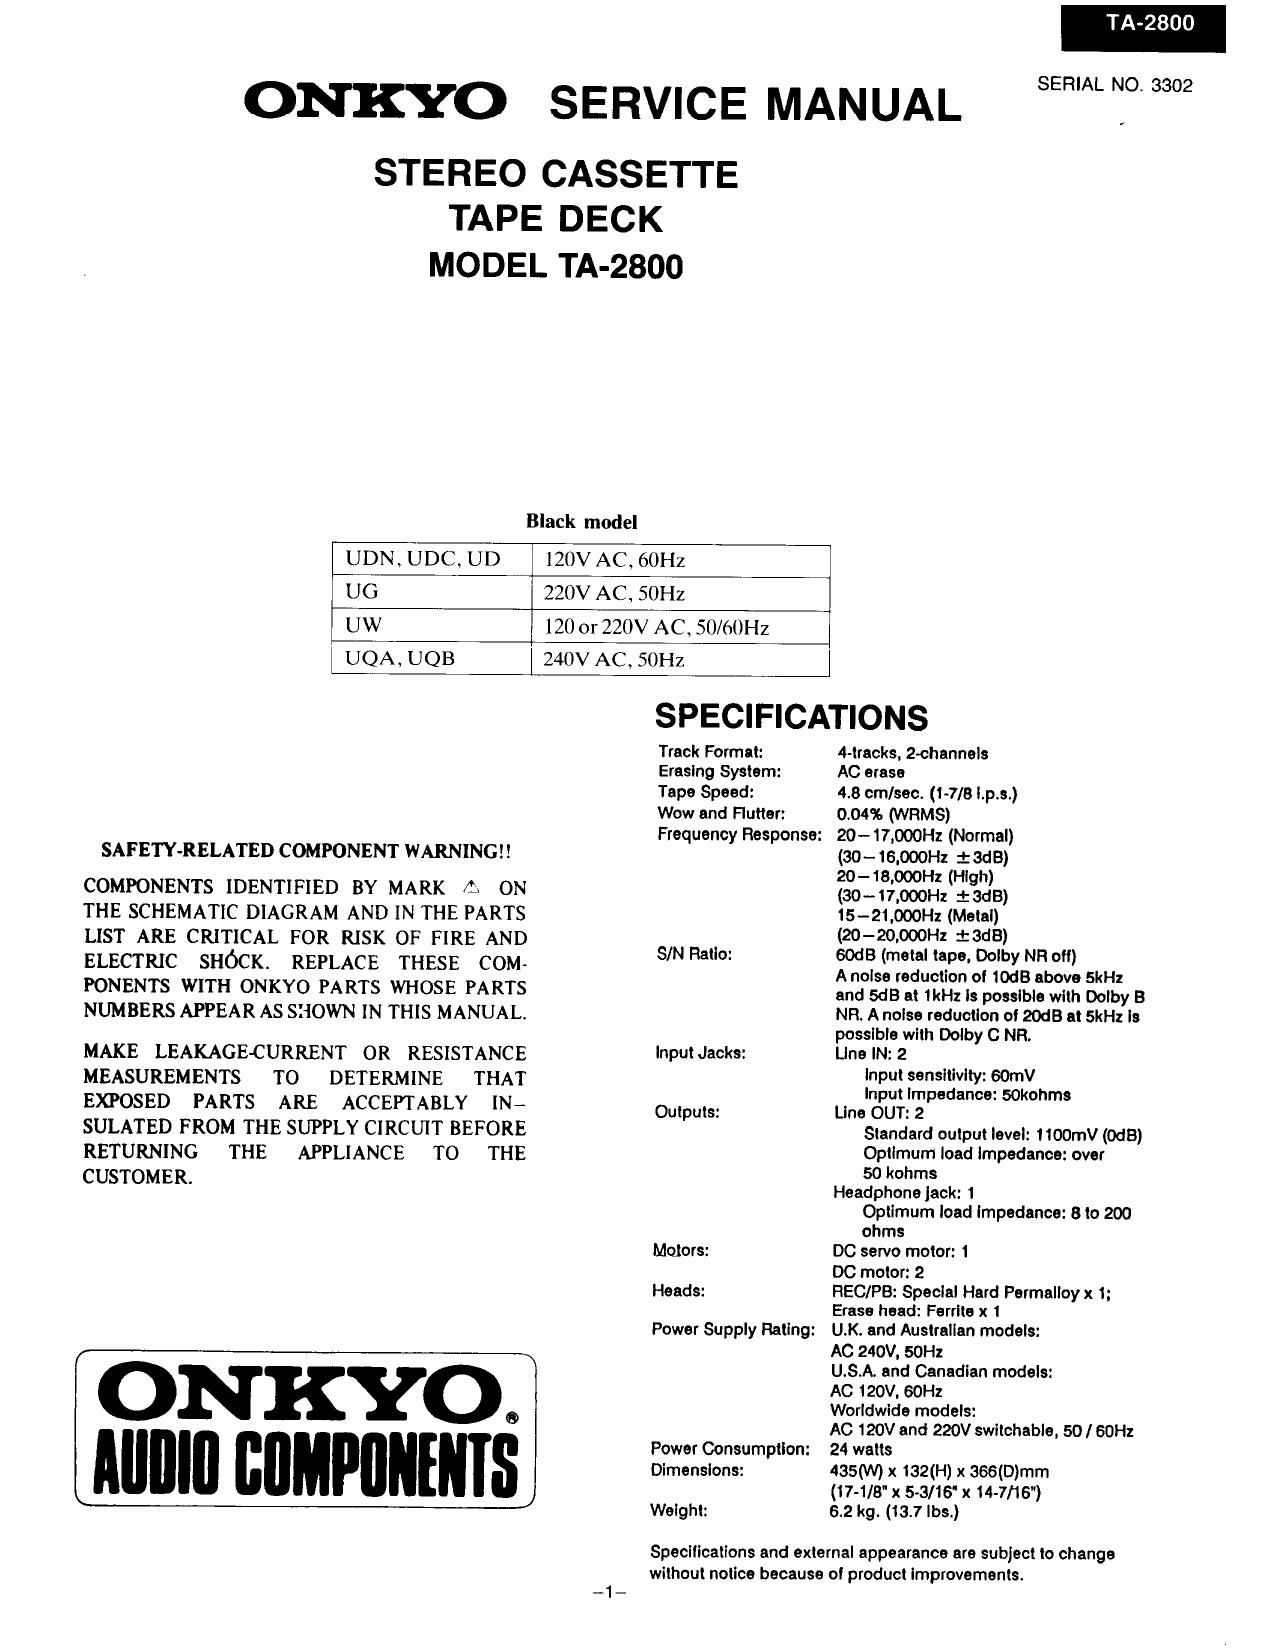 Onkyo TA 2800 Service Manual